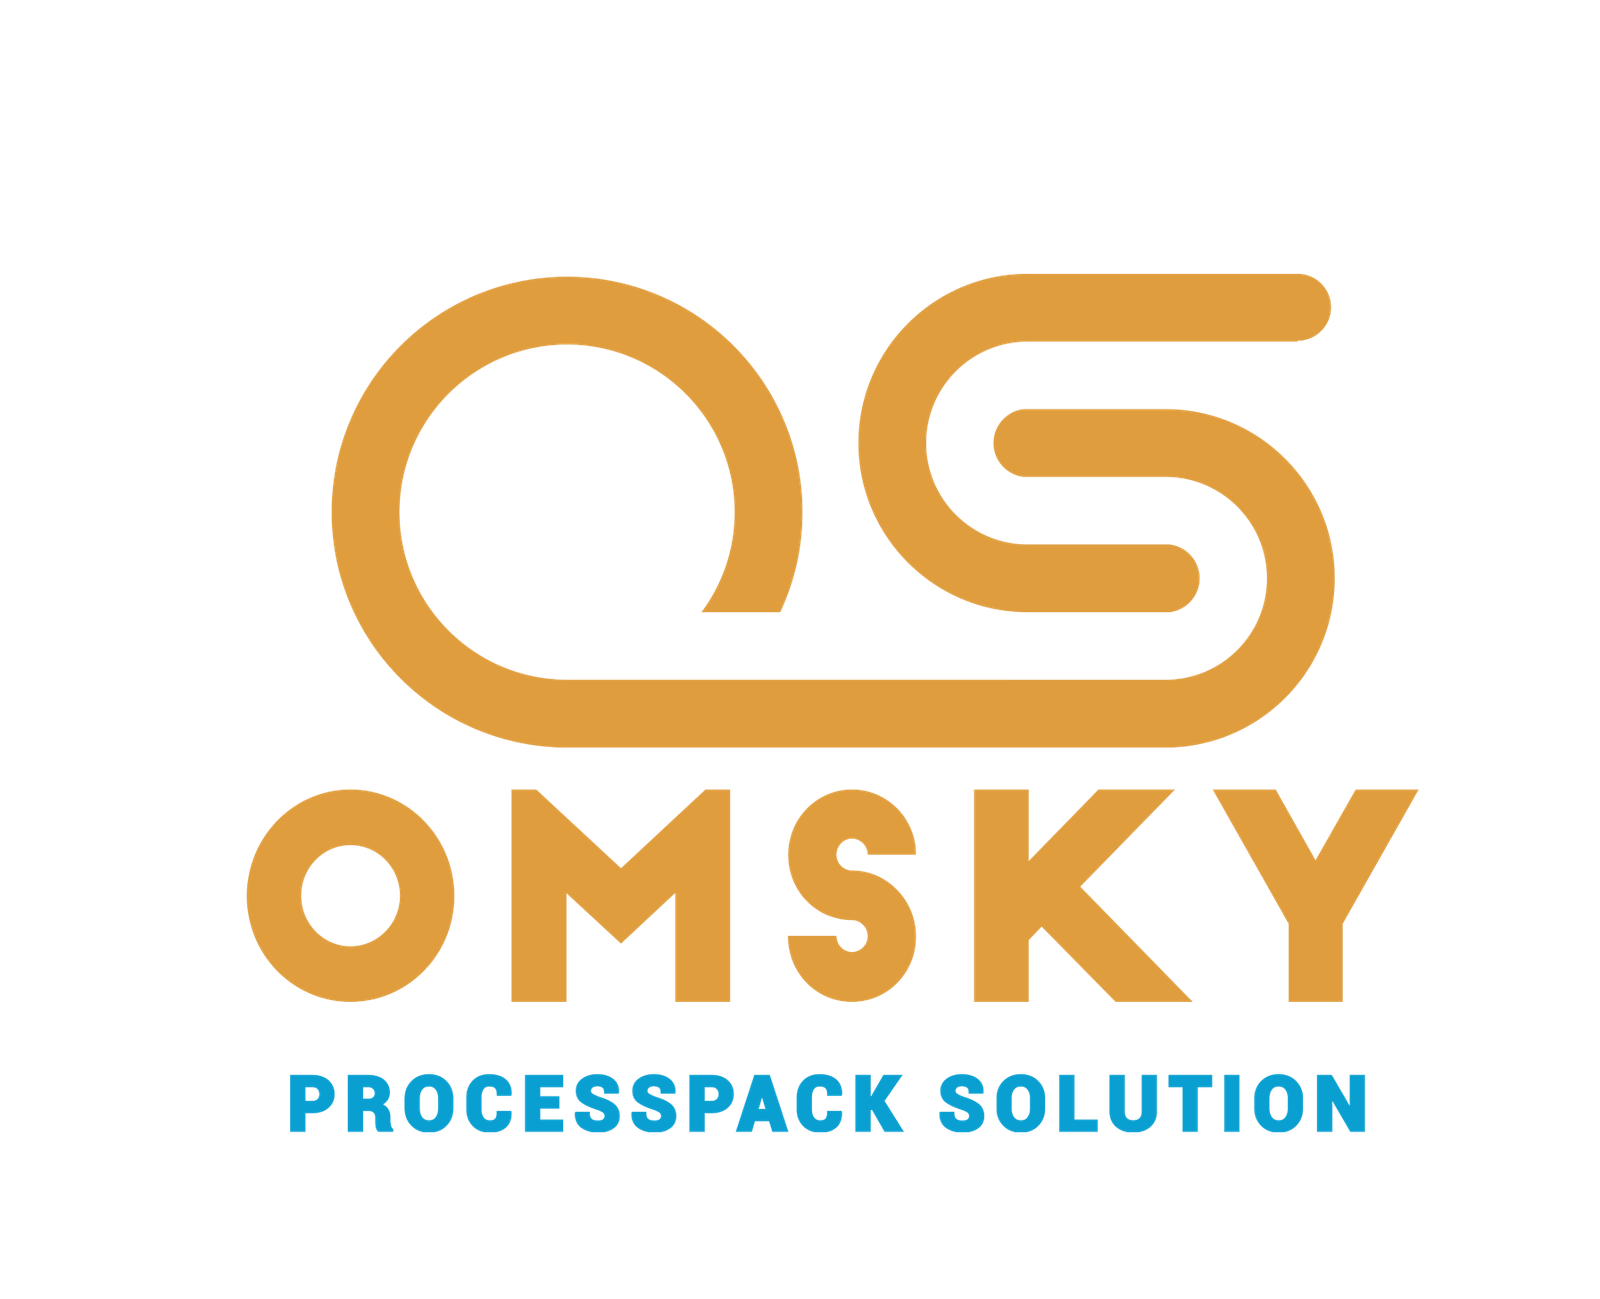 omsky logo design